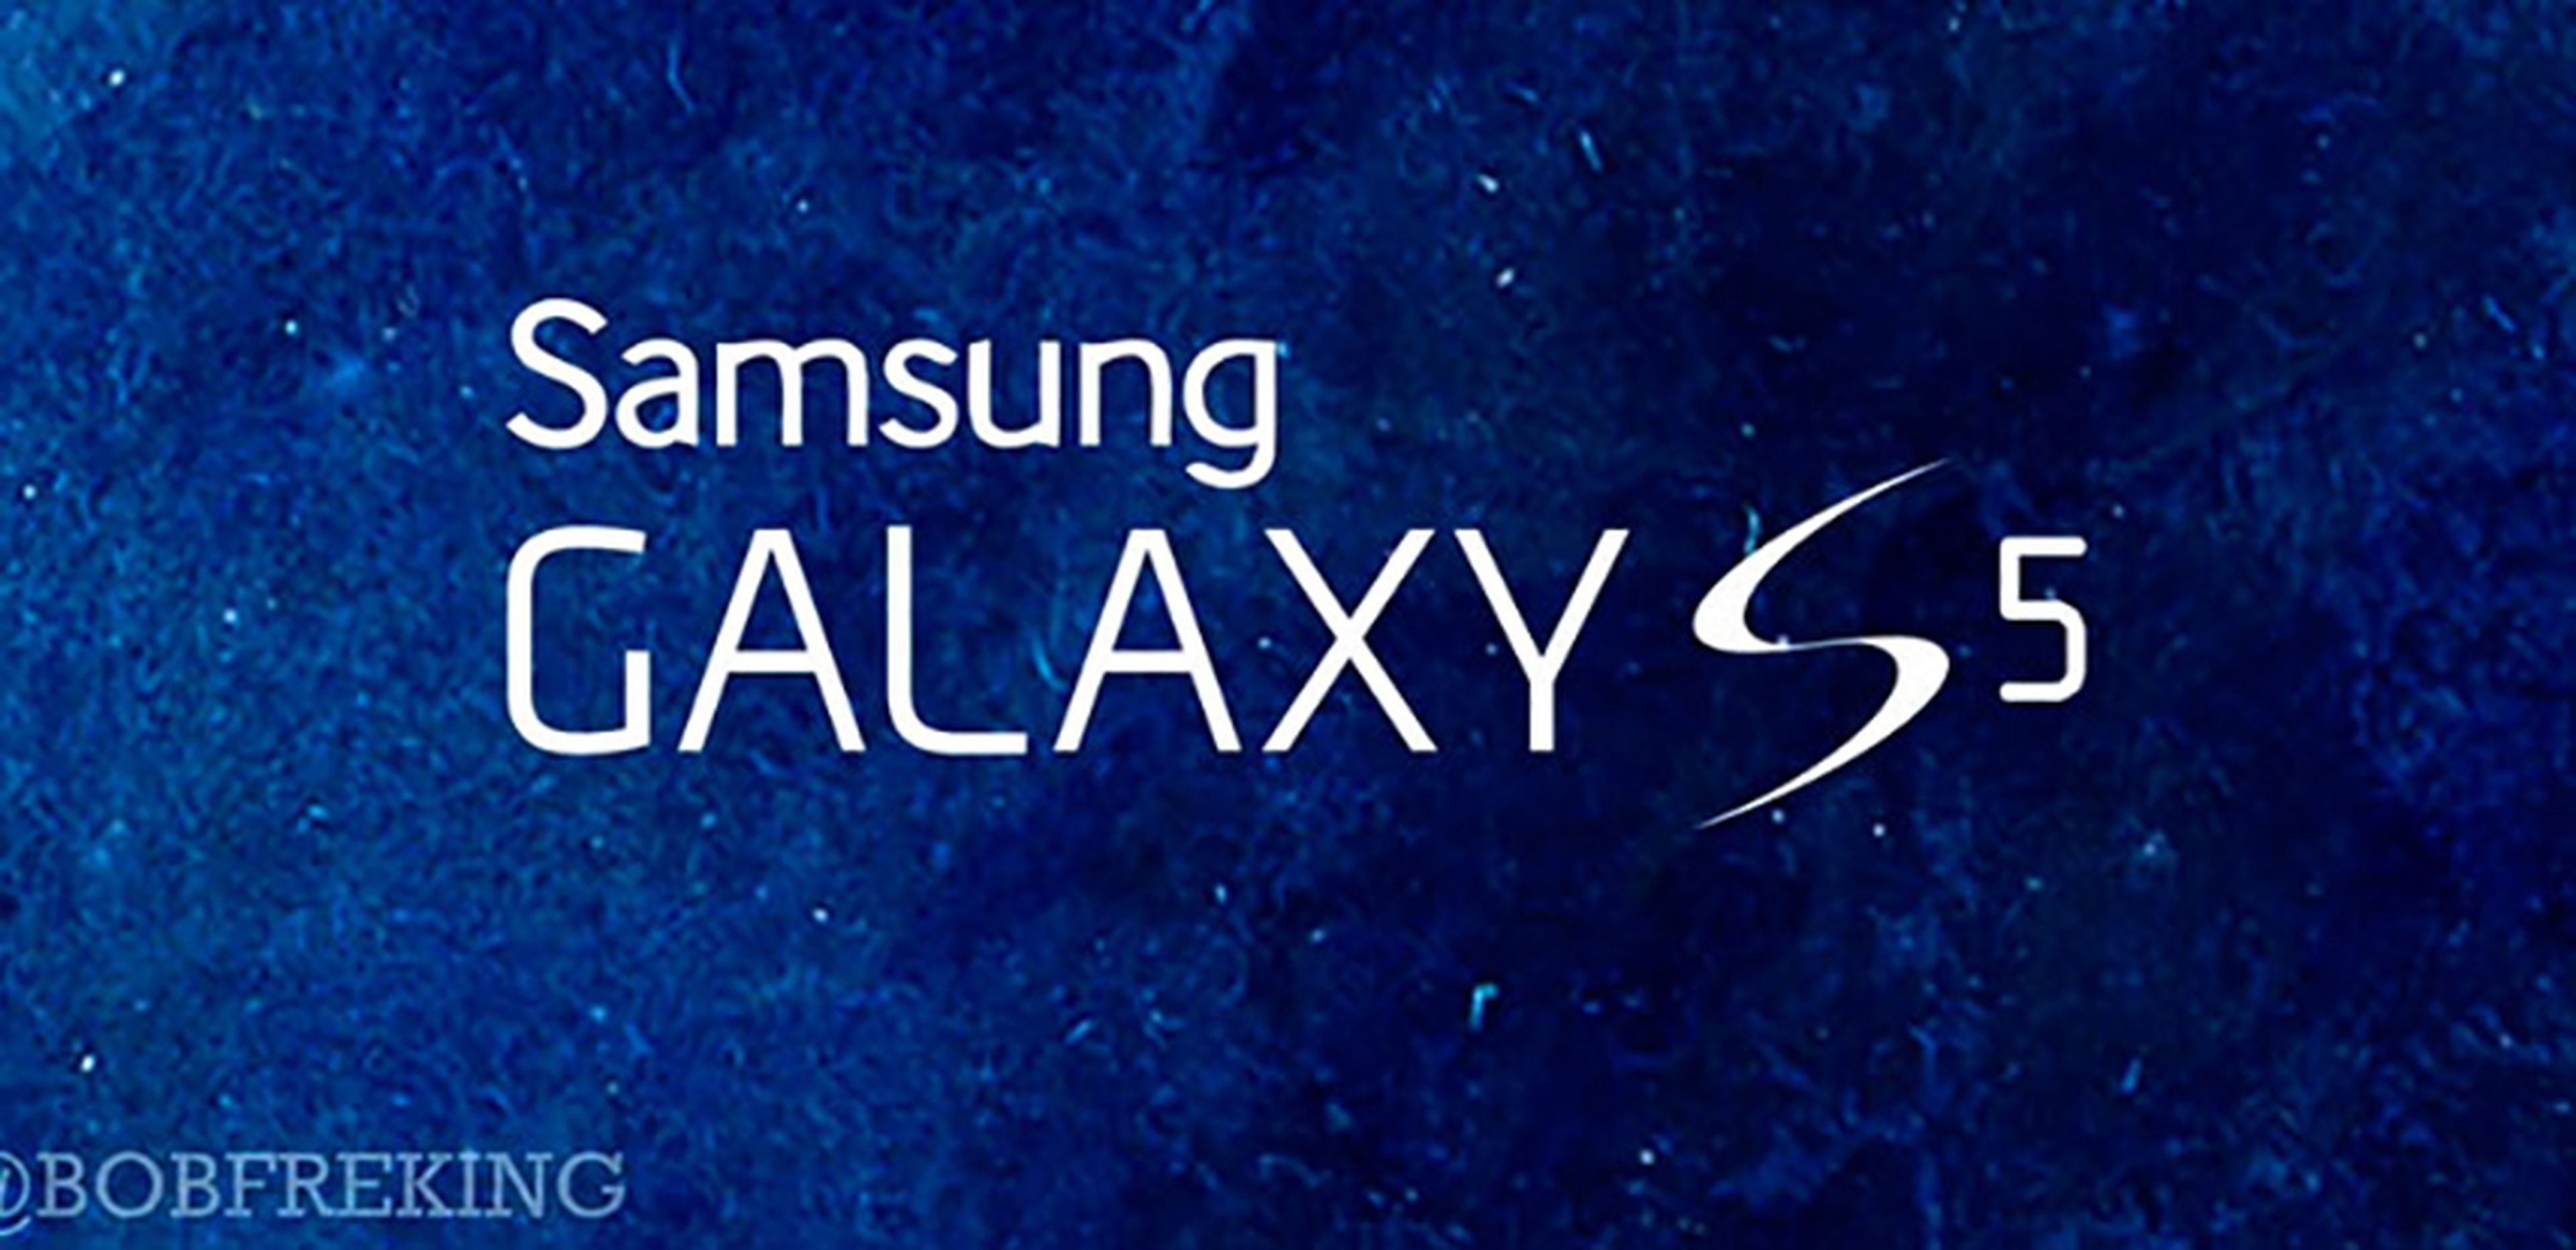 Samsung Galaxy S5, fecha de lanzamiento